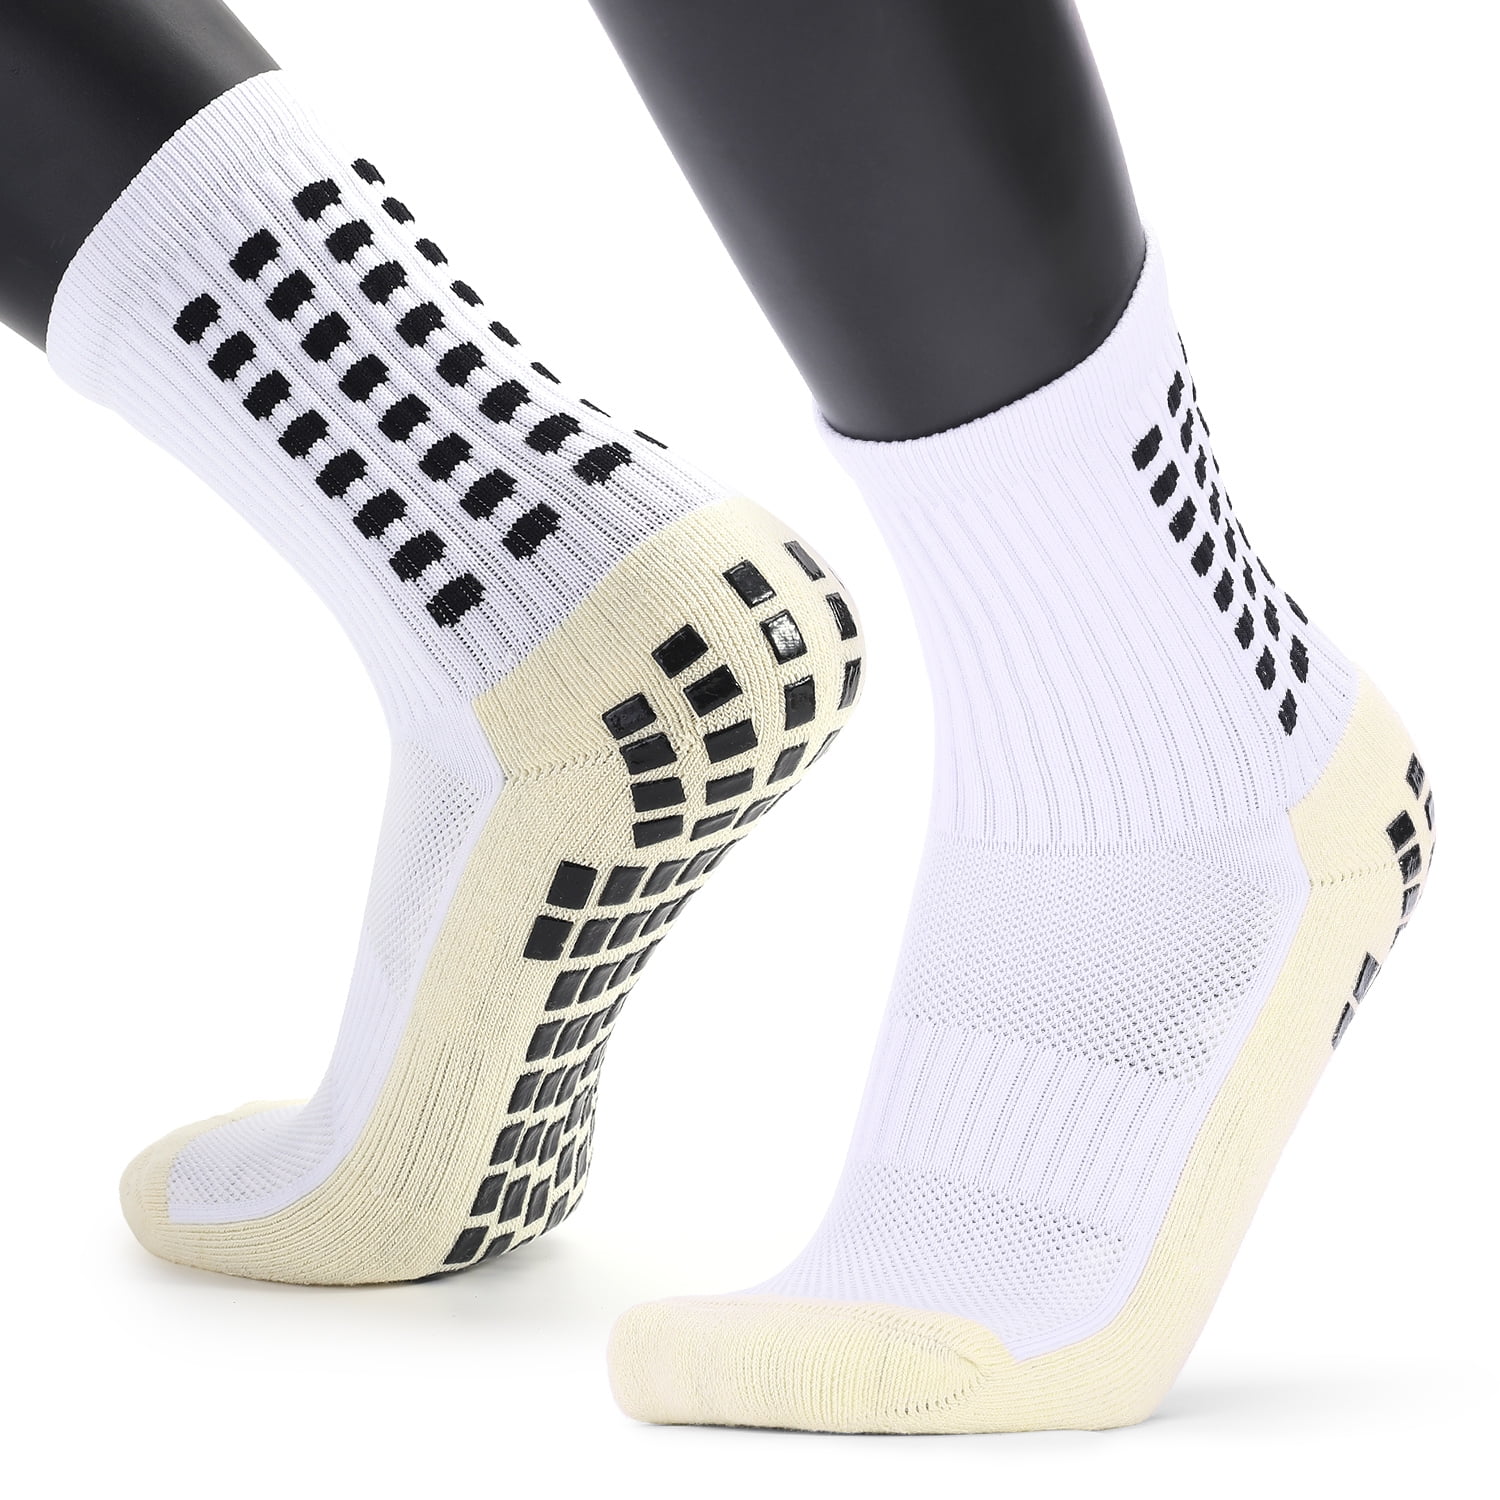 Anti Slip Men's Football Grip Socks BLUE size 6-11 Brand New 